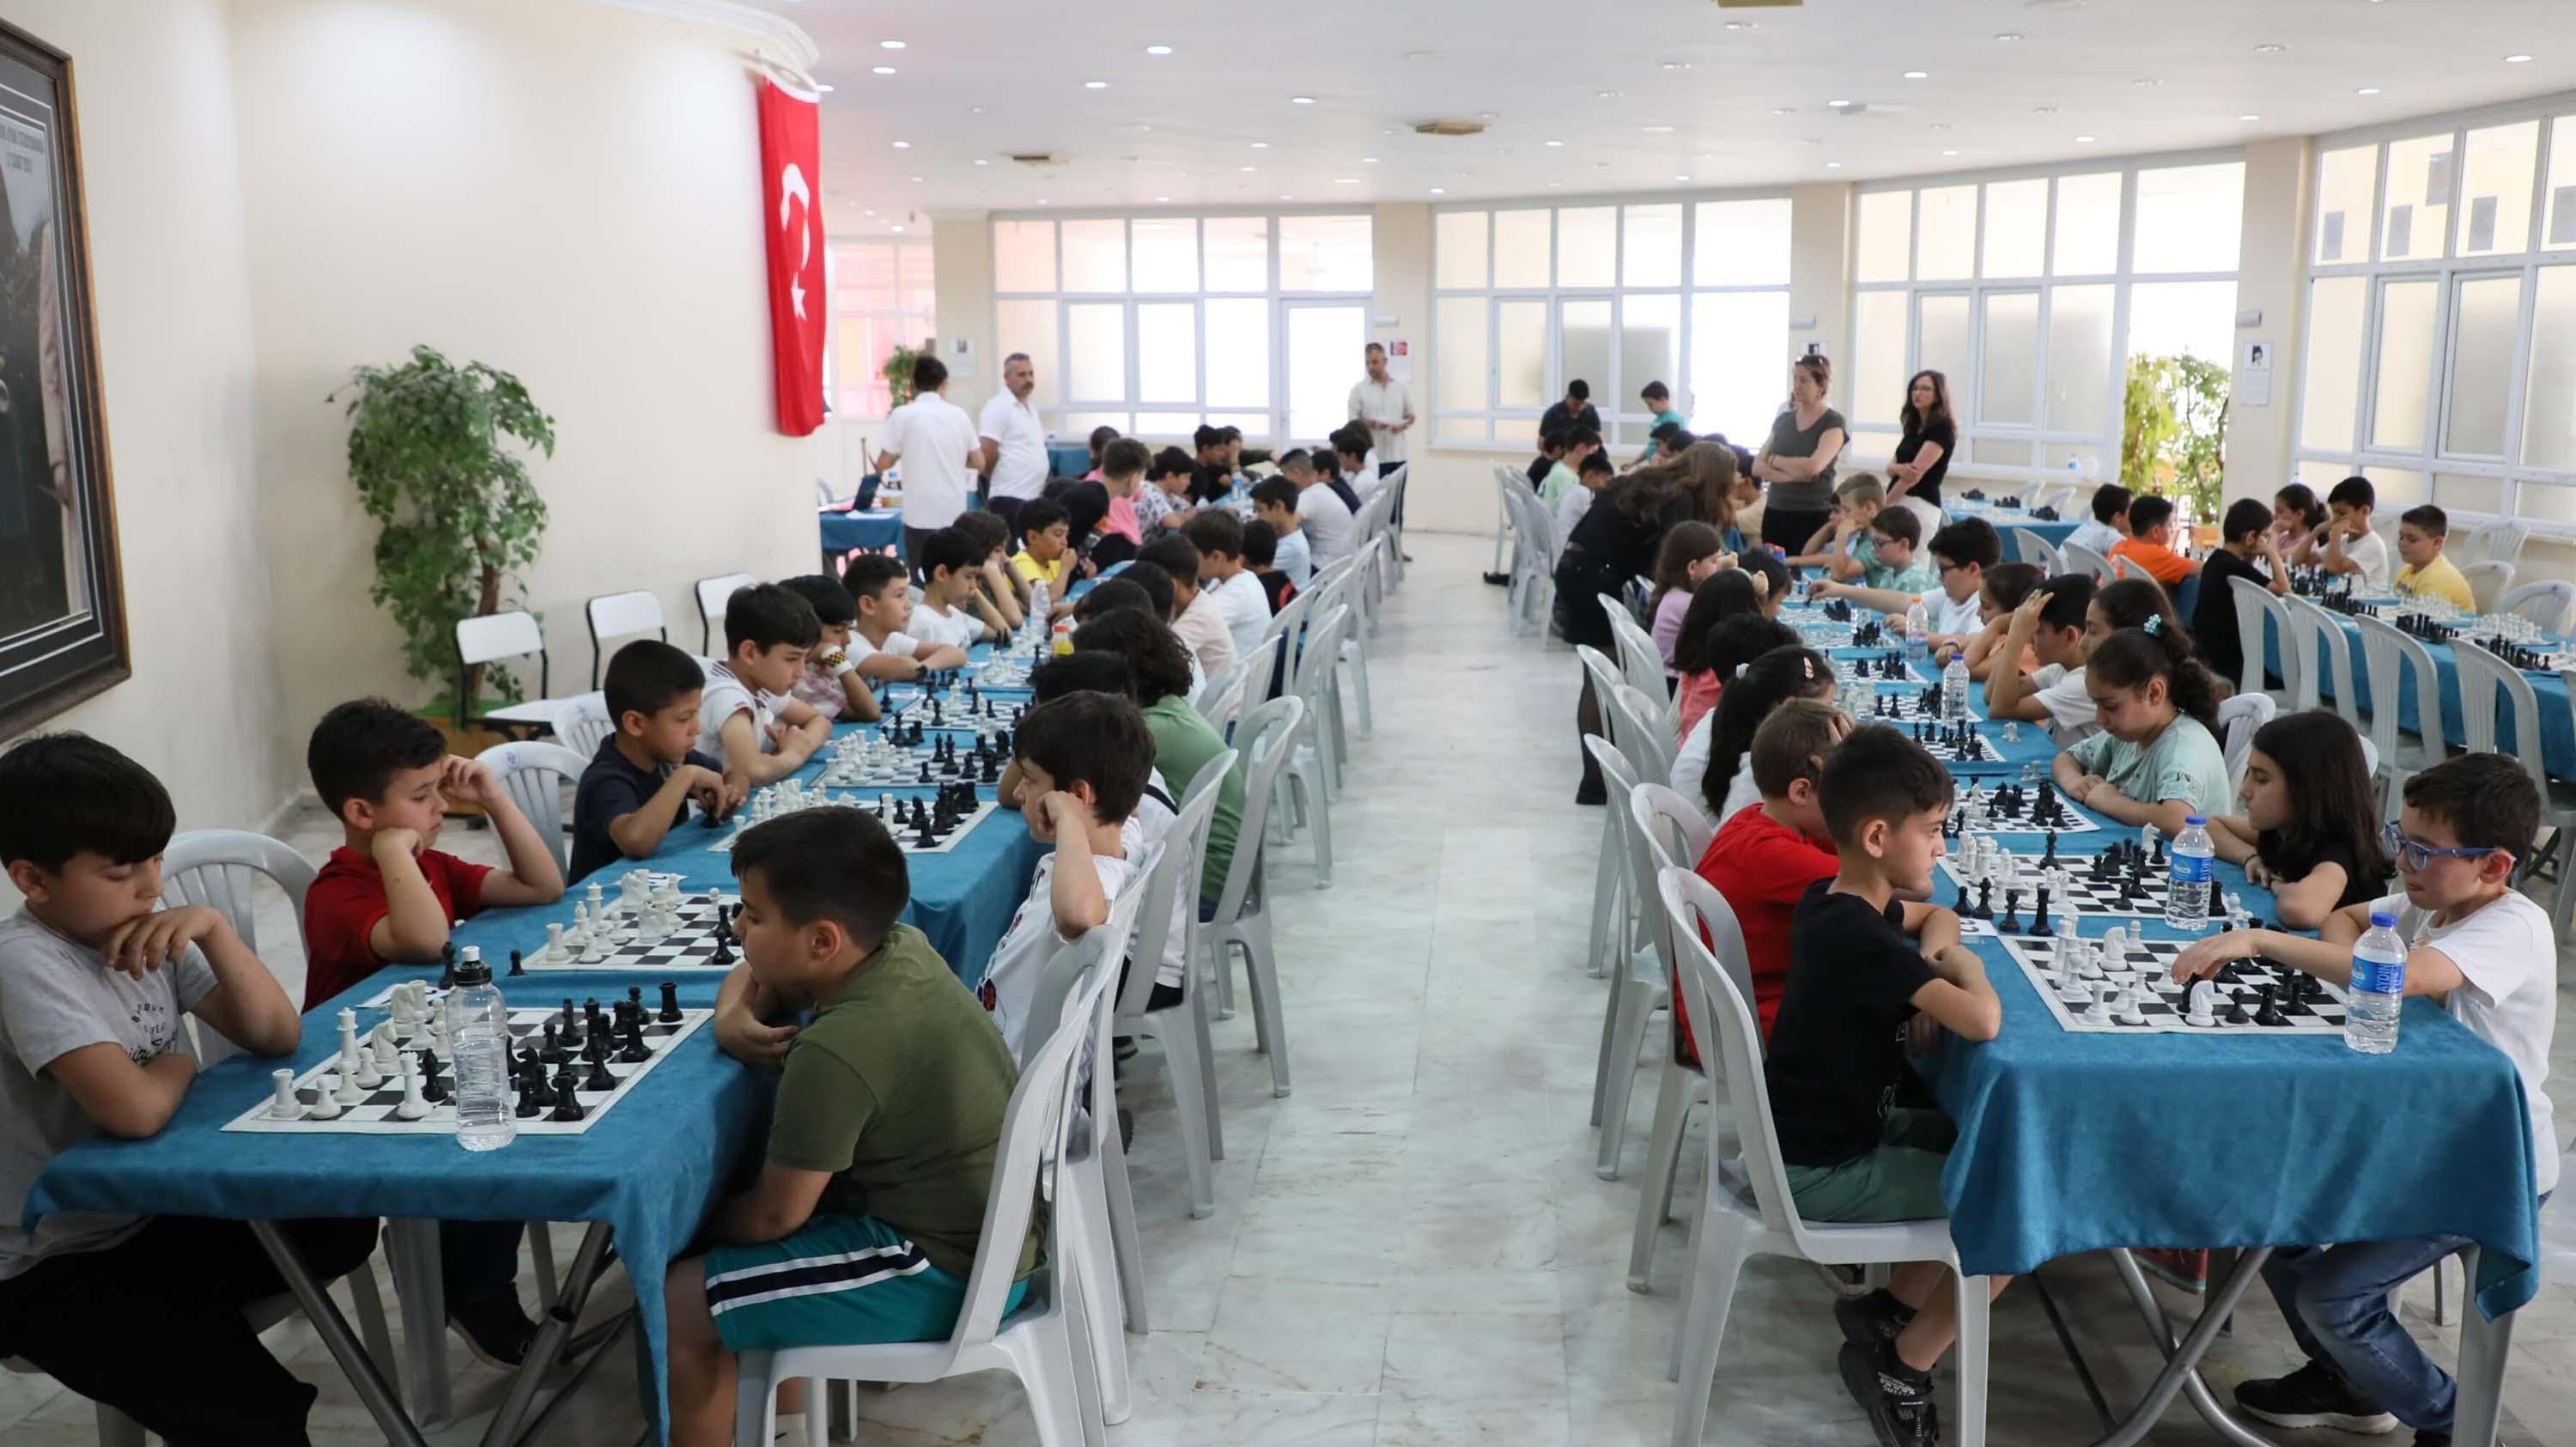 艾登新闻 - 国际象棋锦标赛在艾登举行